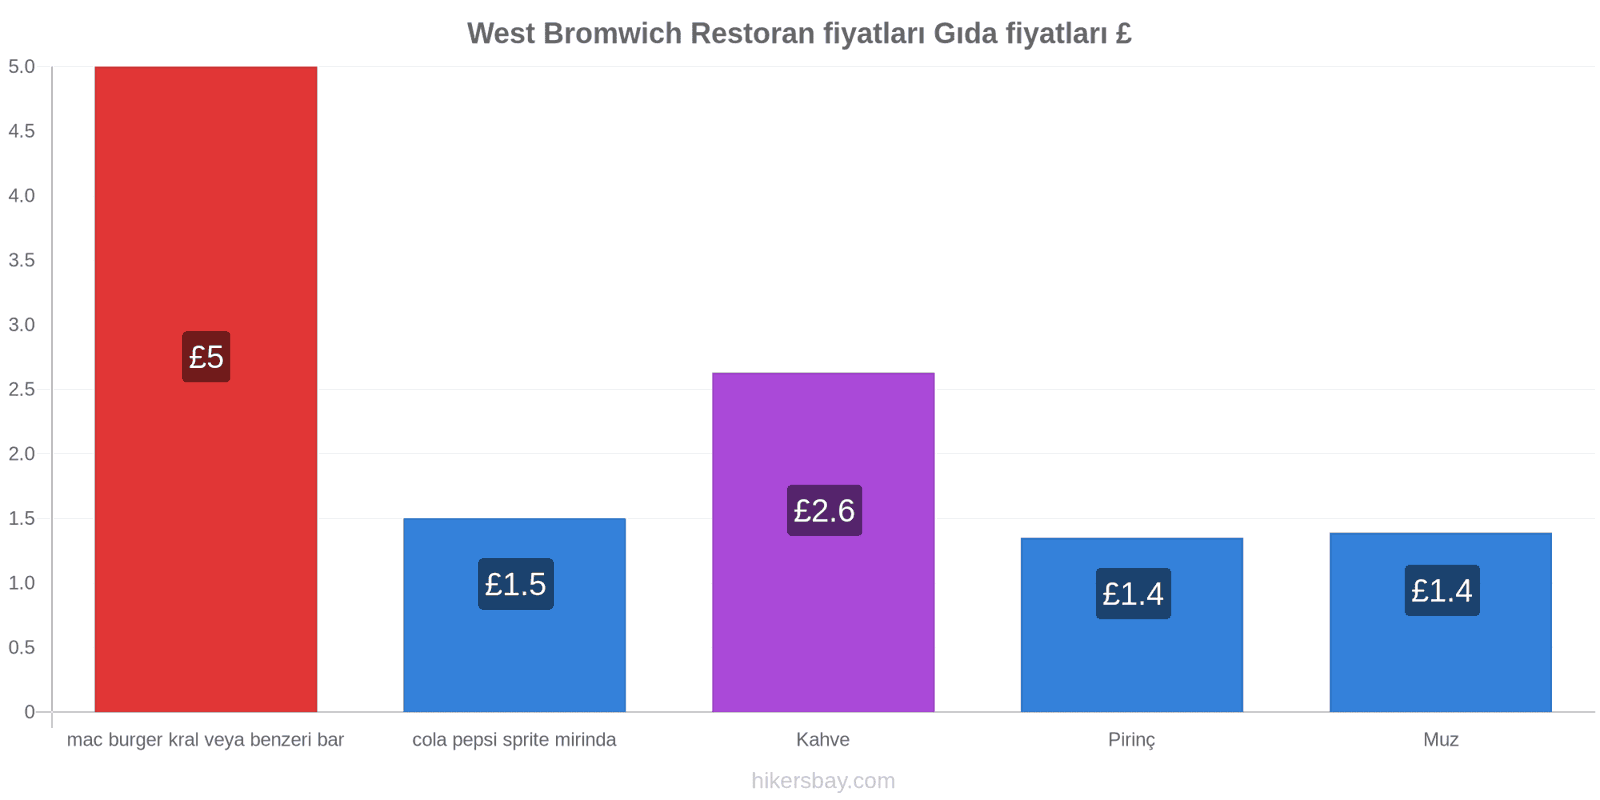 West Bromwich fiyat değişiklikleri hikersbay.com